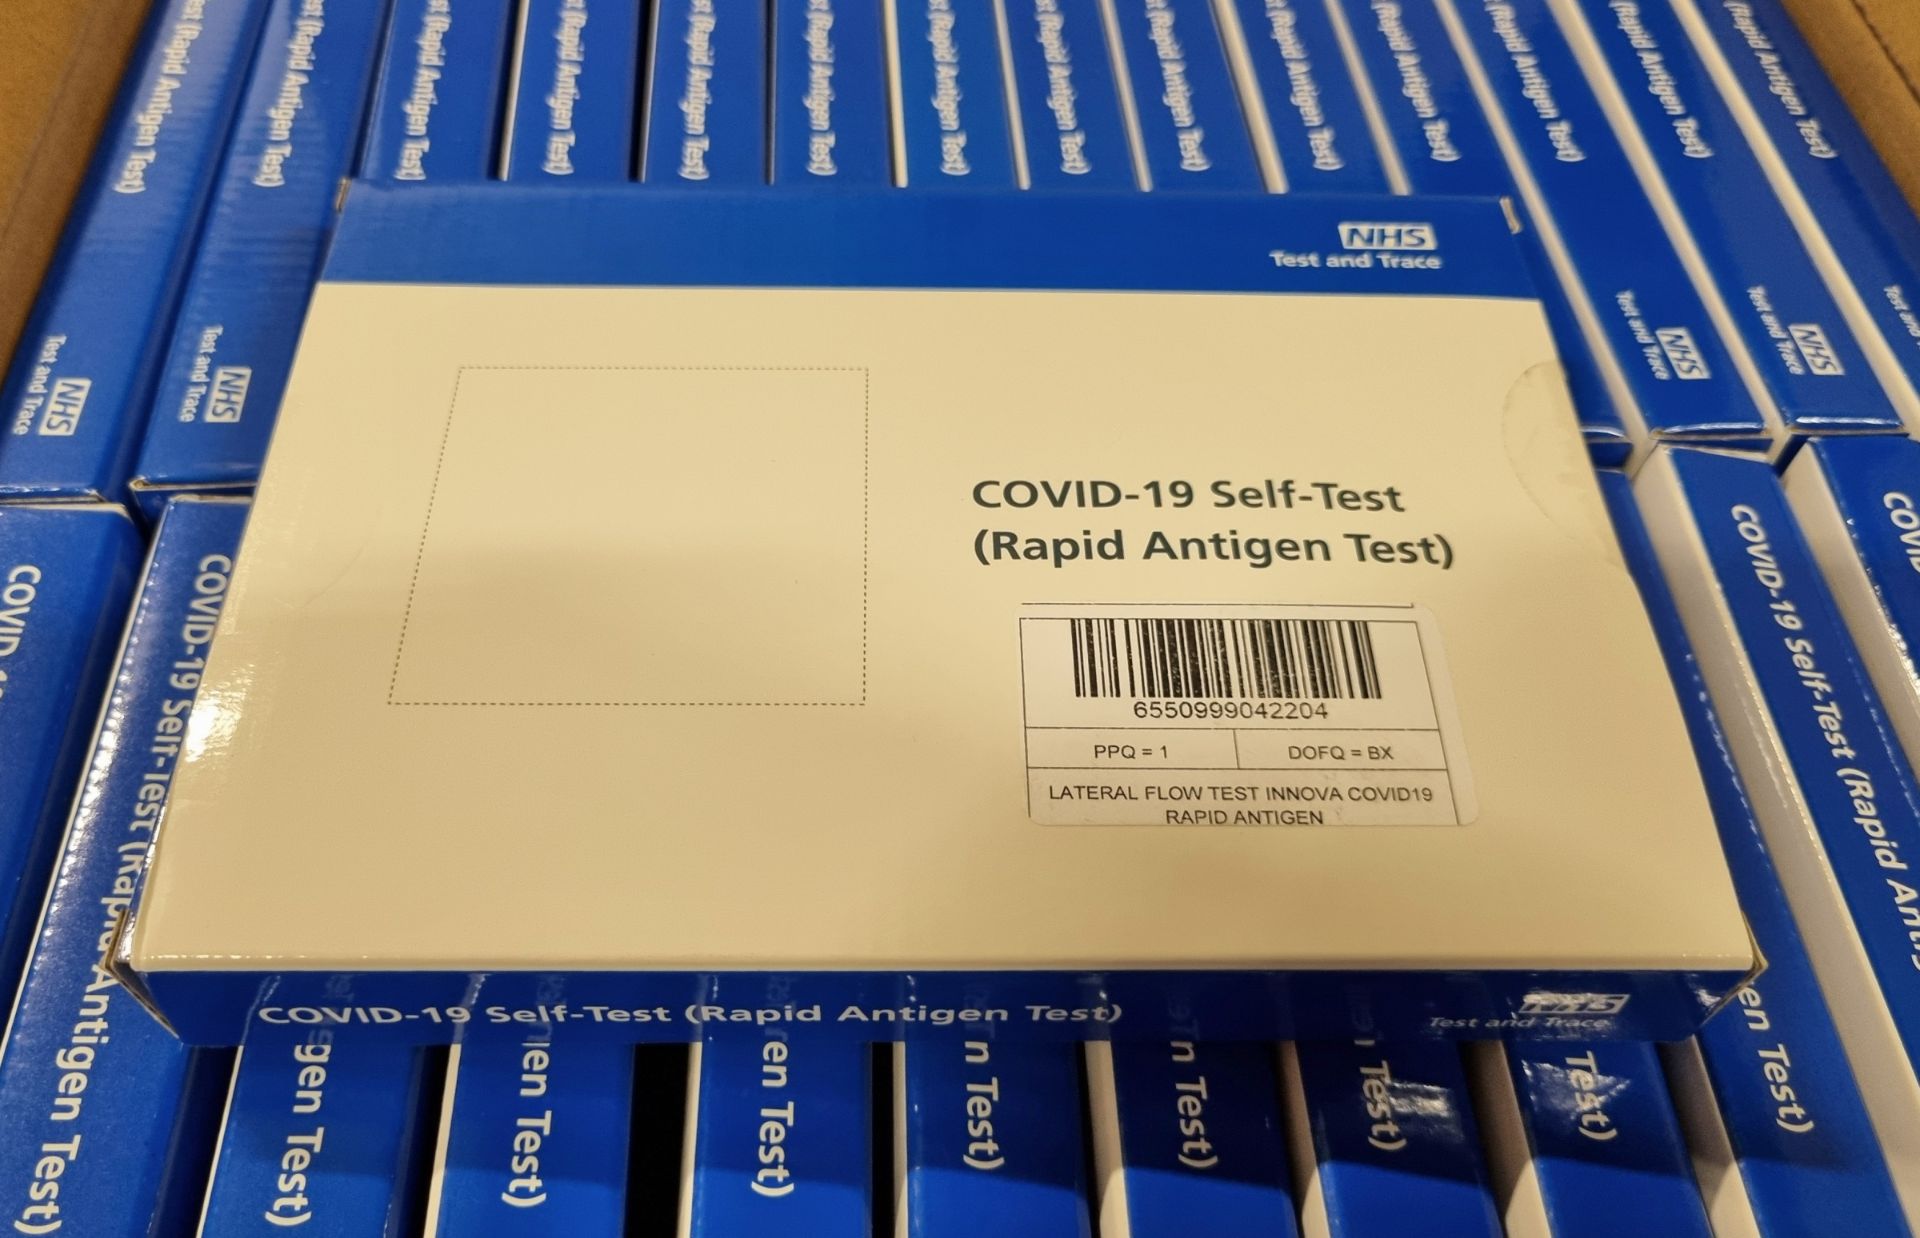 Covid 19 Rapid Antigen Test Self-Test kit - Lot no.X2104005 - 24 boxes (56 packs of 7 per box) - Bild 3 aus 3